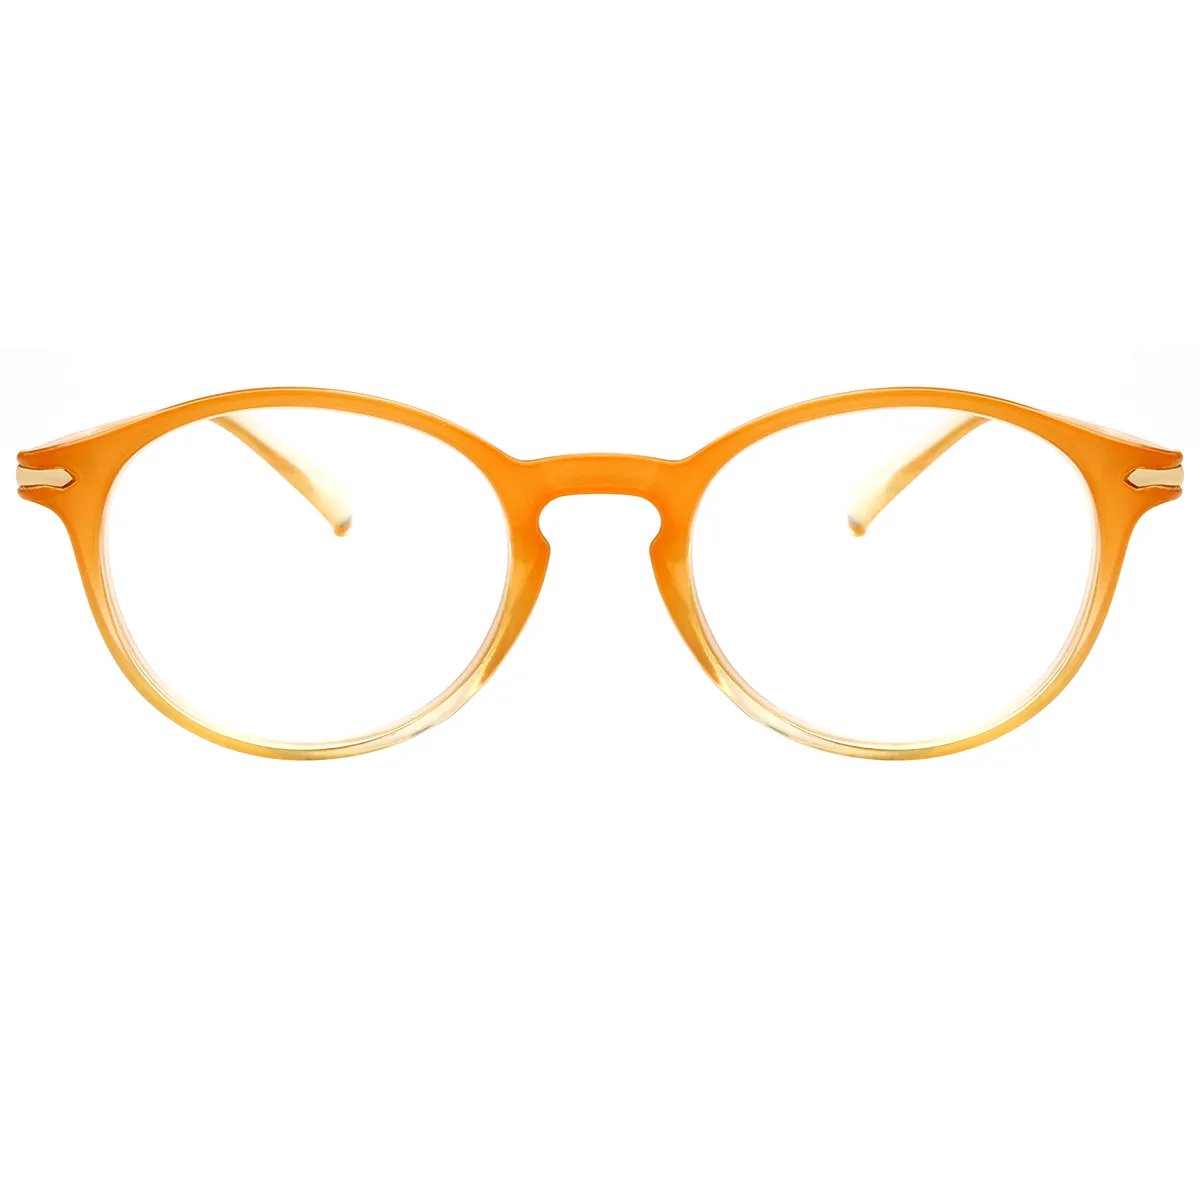 Gallaecia - Oval Orange Reading glasses for Women